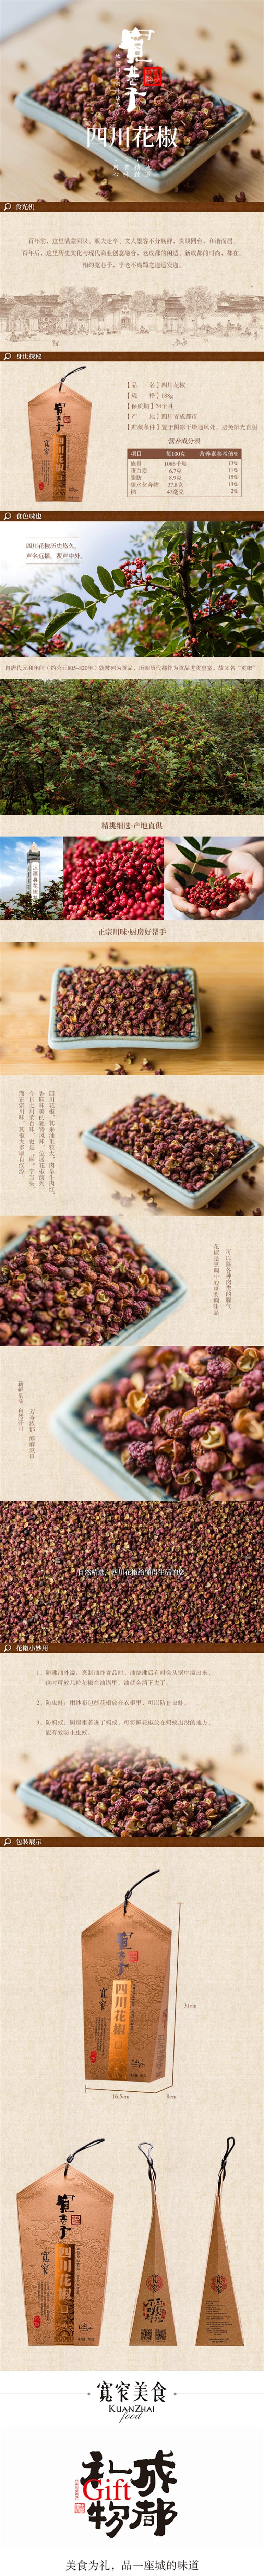 Chengdu specialty in Sichuan Pepper